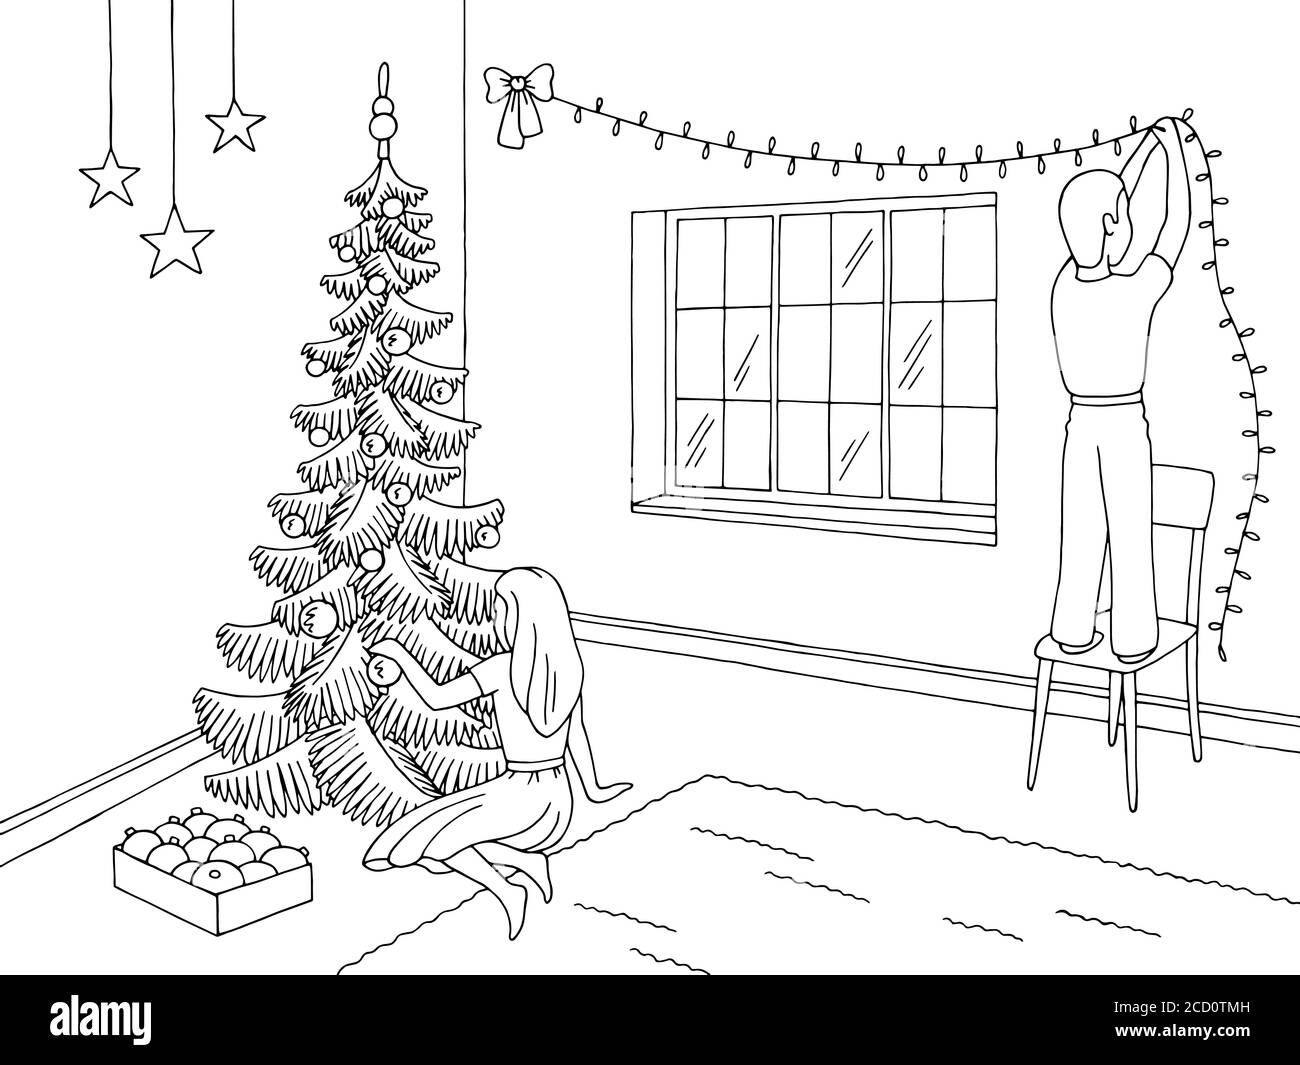 Wohnzimmer Grafik schwarz weiß Interieur Skizze Illustration Vektor. Kinder dekorieren das Zimmer und Weihnachtsbaum Stock Vektor